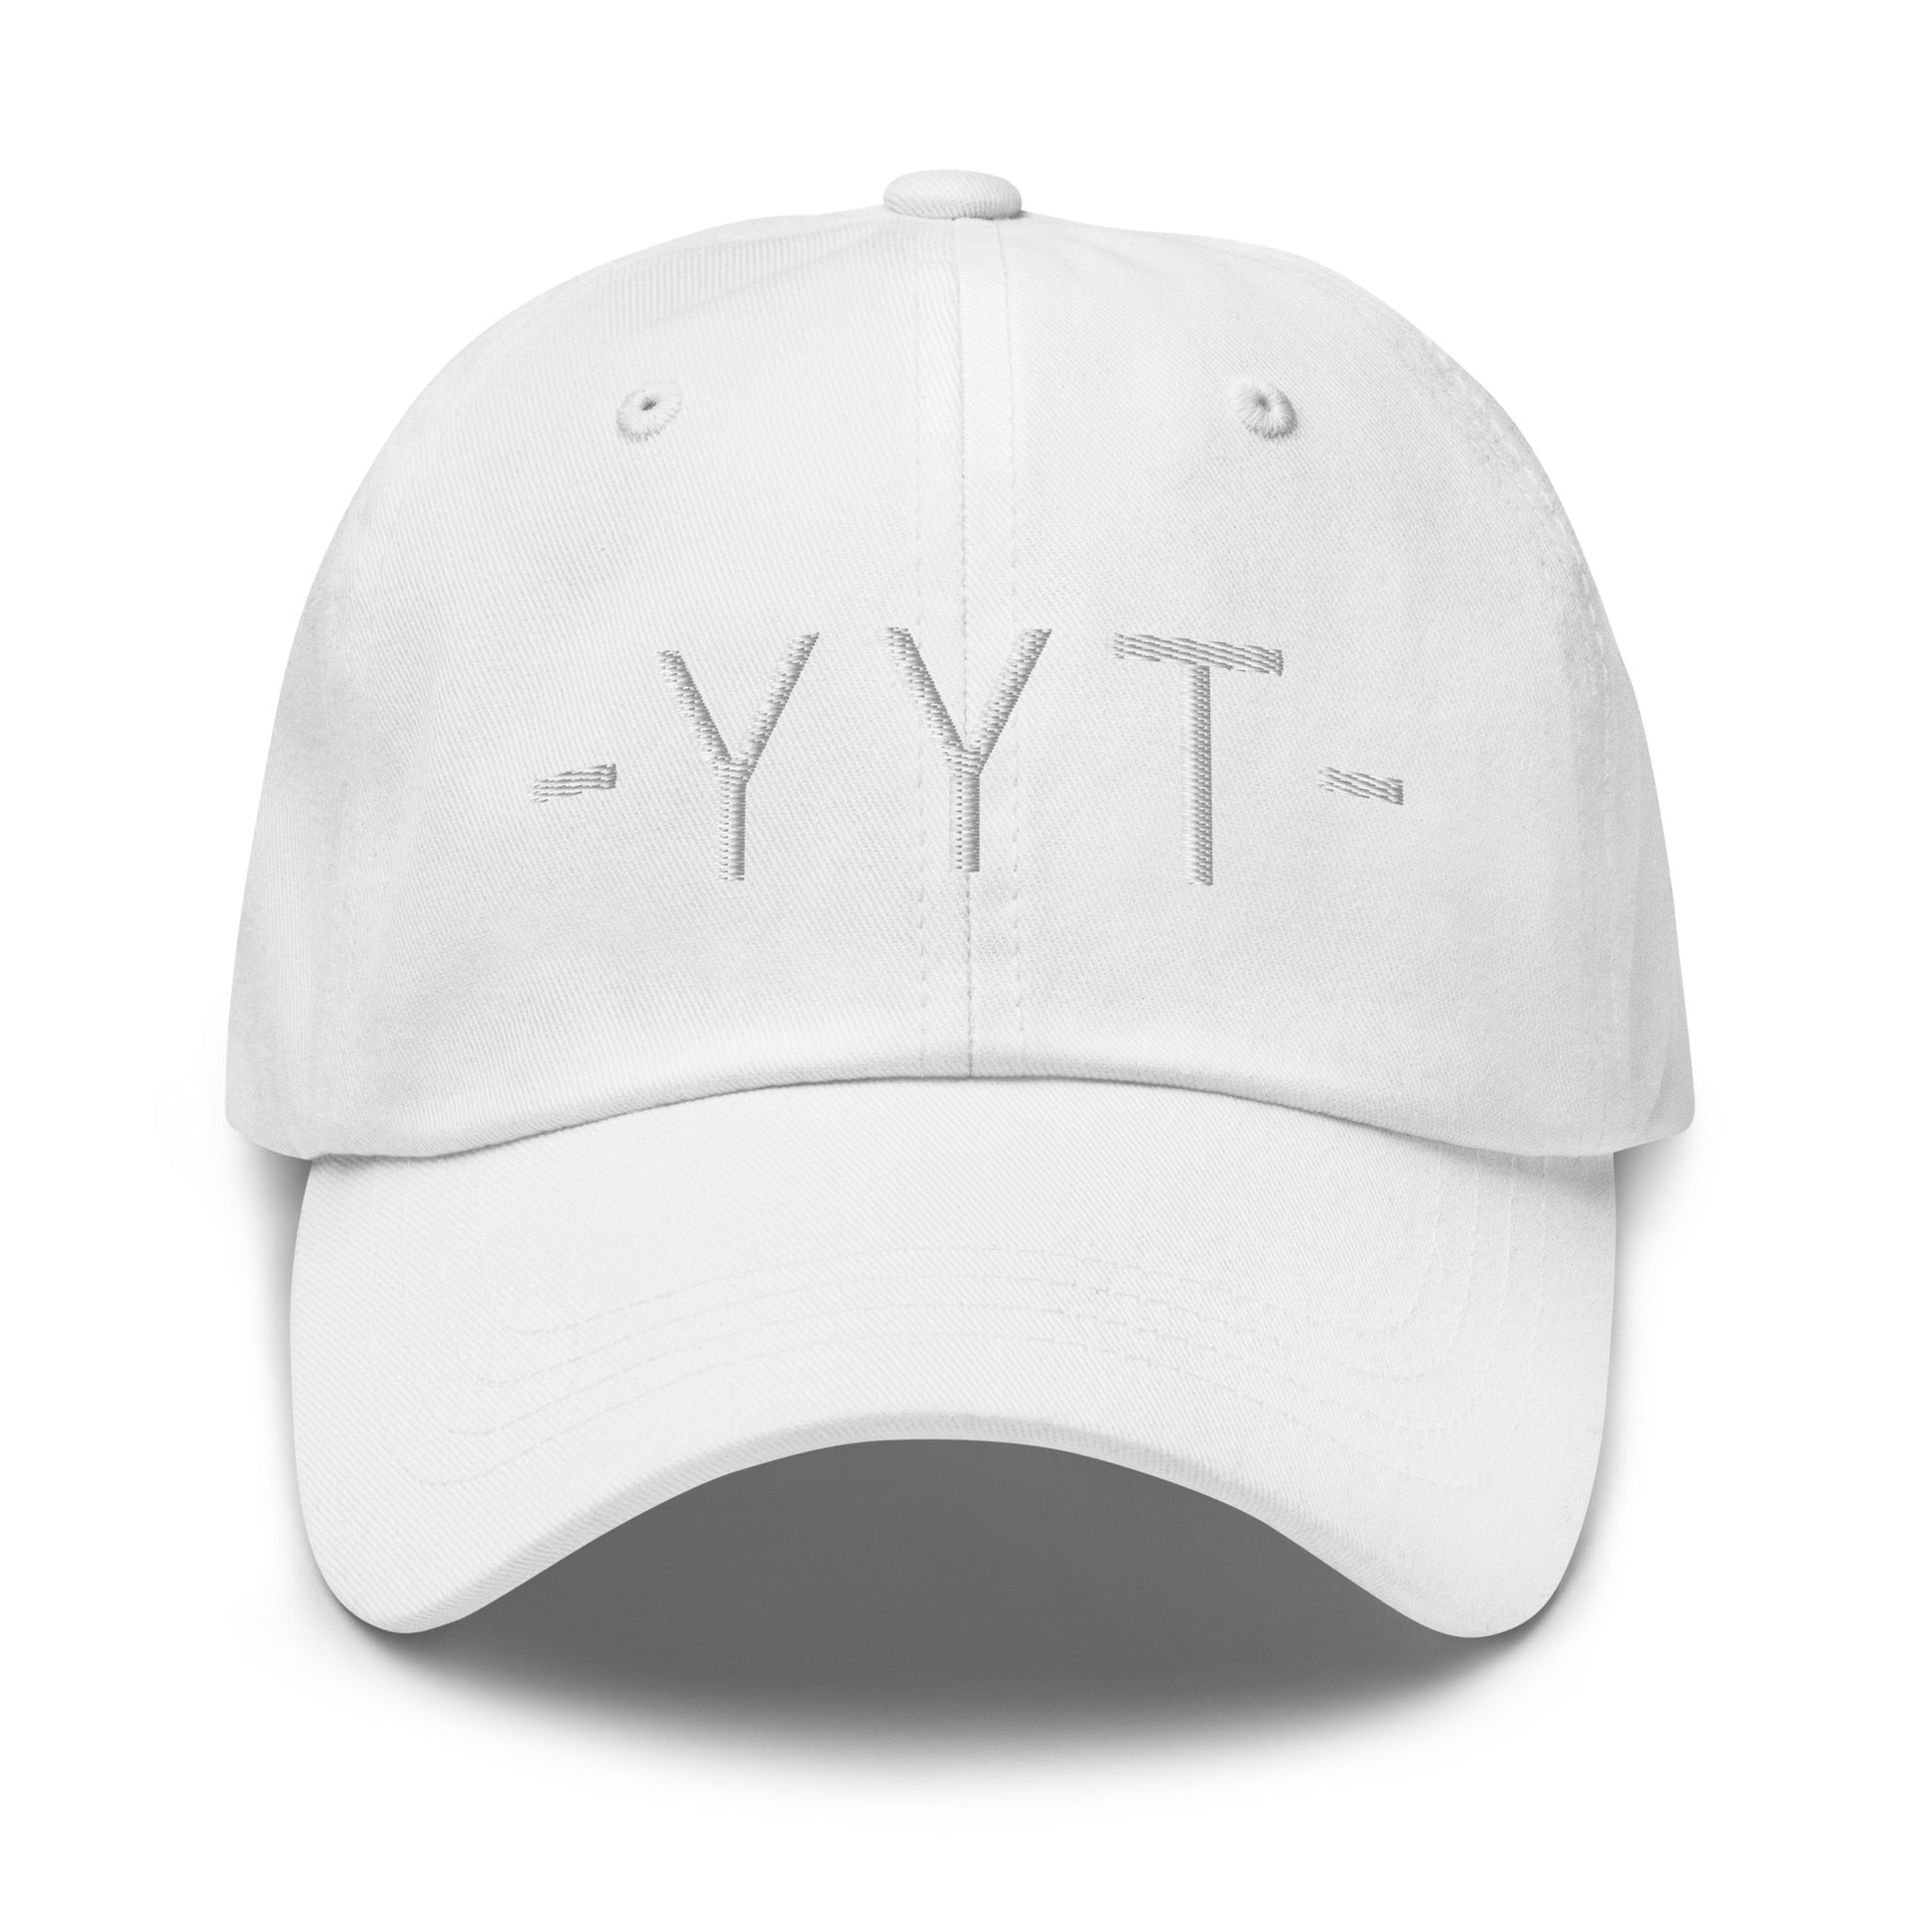 Souvenir Baseball Cap - White • YYT St. John's • YHM Designs - Image 29